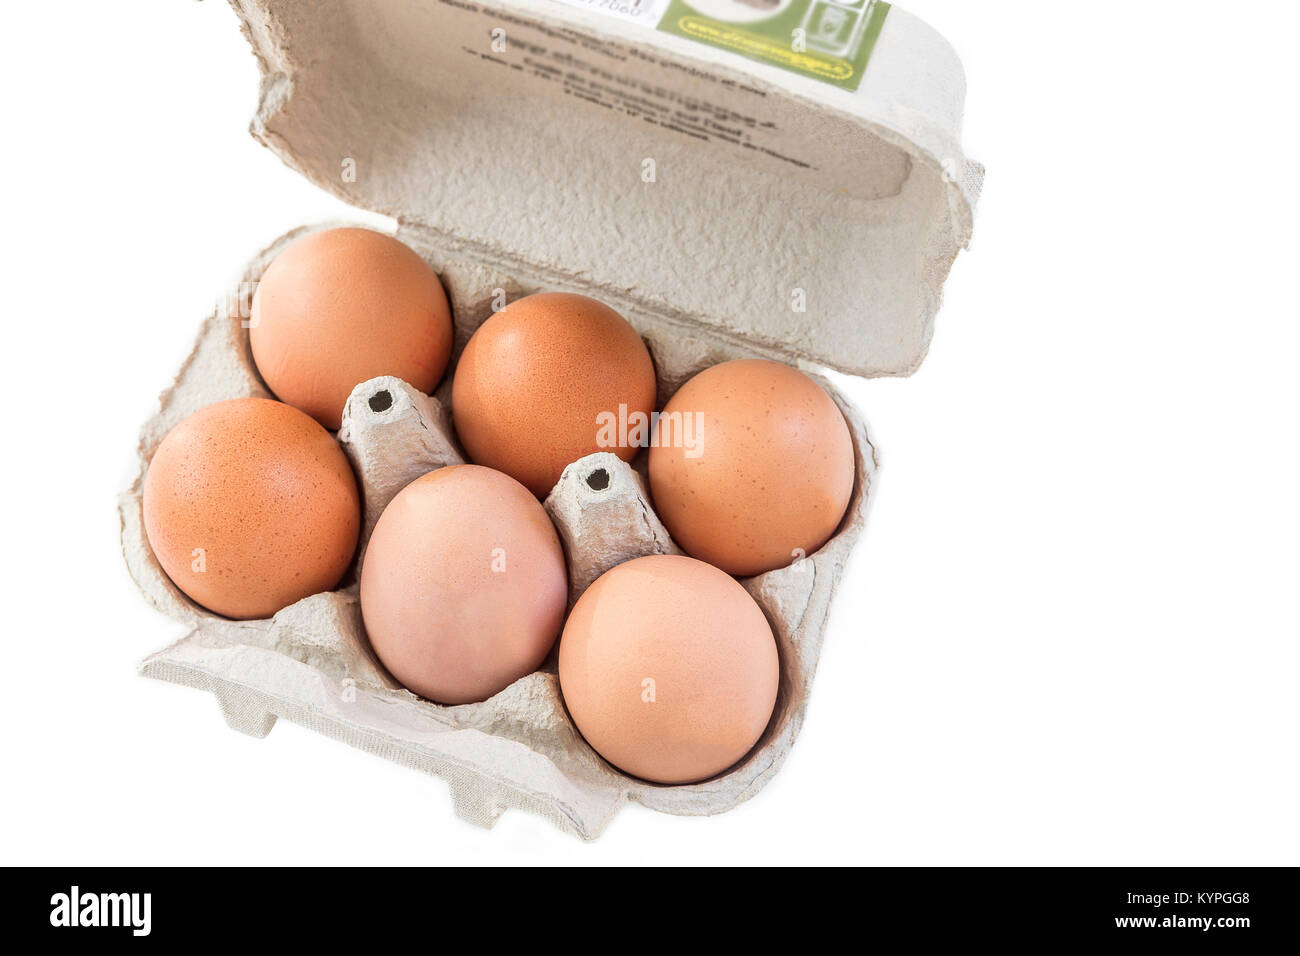 Primer plano de un cartón de huevos reciclables abierto con seis huevos dentro de un fondo blanco Ecológico de alimentos saludables bio farms. Foto de stock